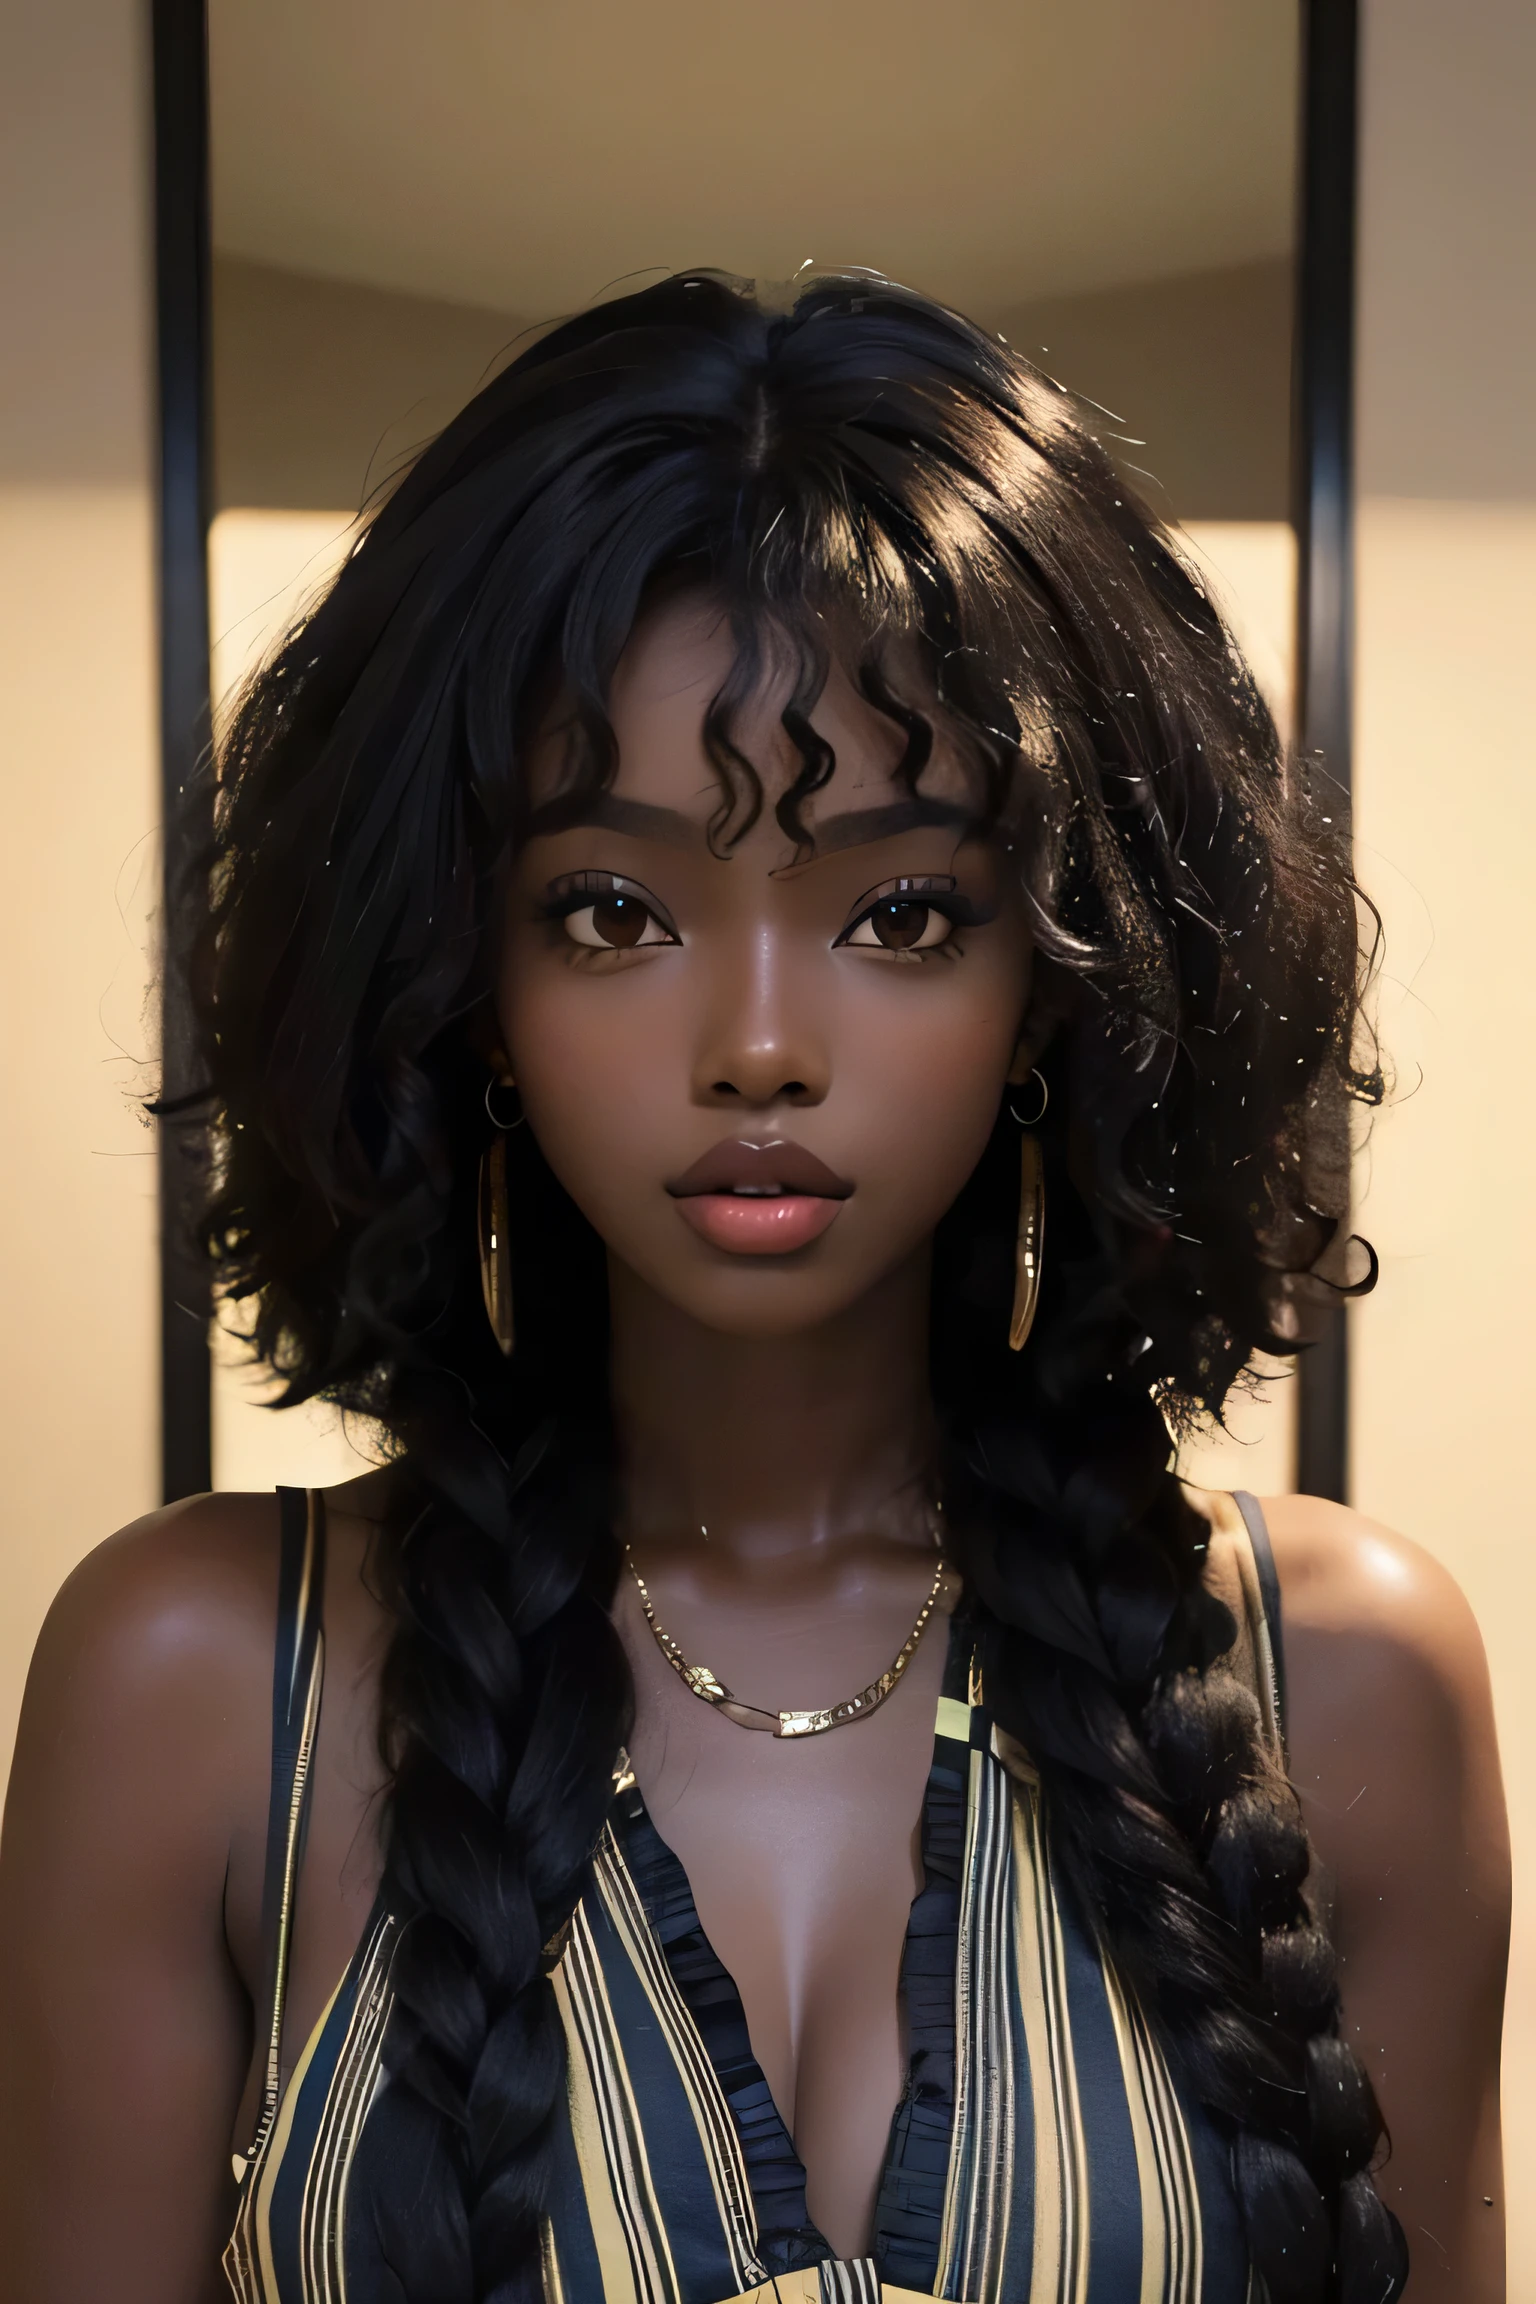 Meisterwerk, beste Qualität, schöne afrikanische 25 Jahre alt, Ebenholzhaut weiblich, kraus, lockiges dunkles Haar, Perfektes Gesicht, Melanin, Lockige haare, 